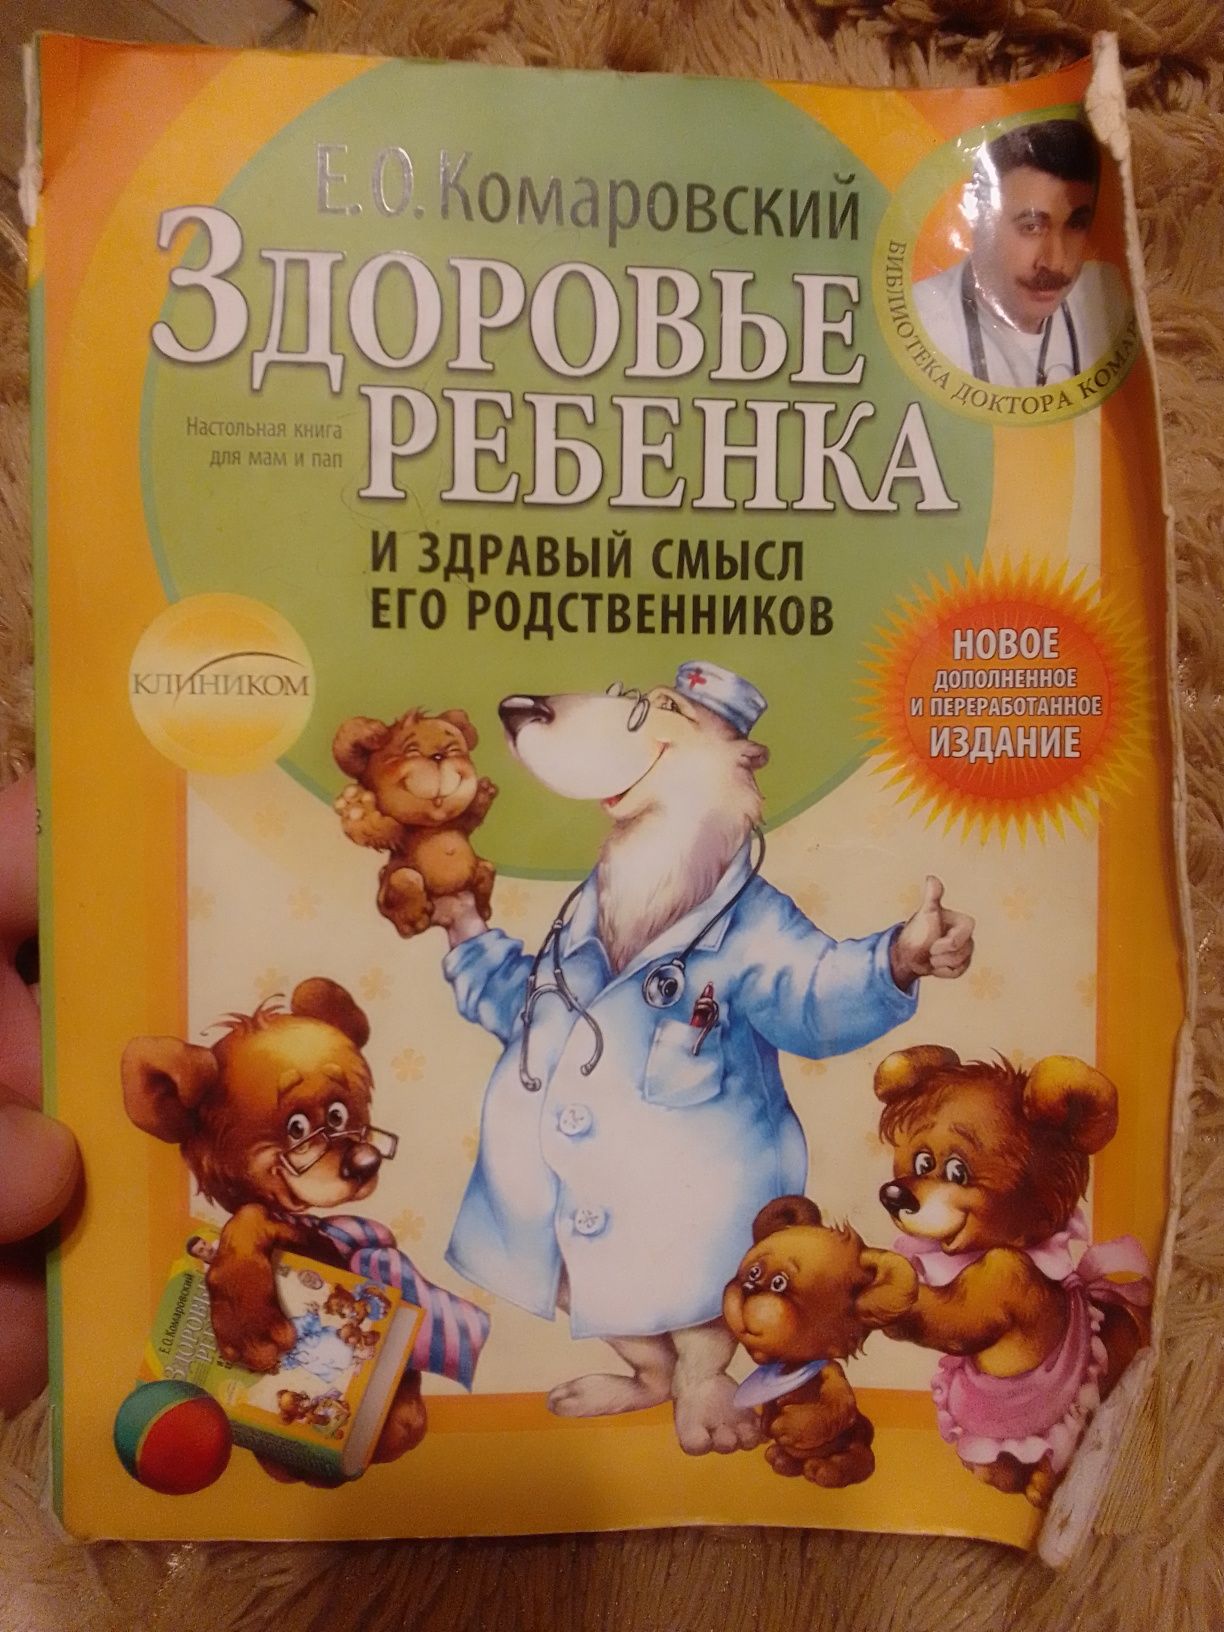 Книга лікаря Комаровського.